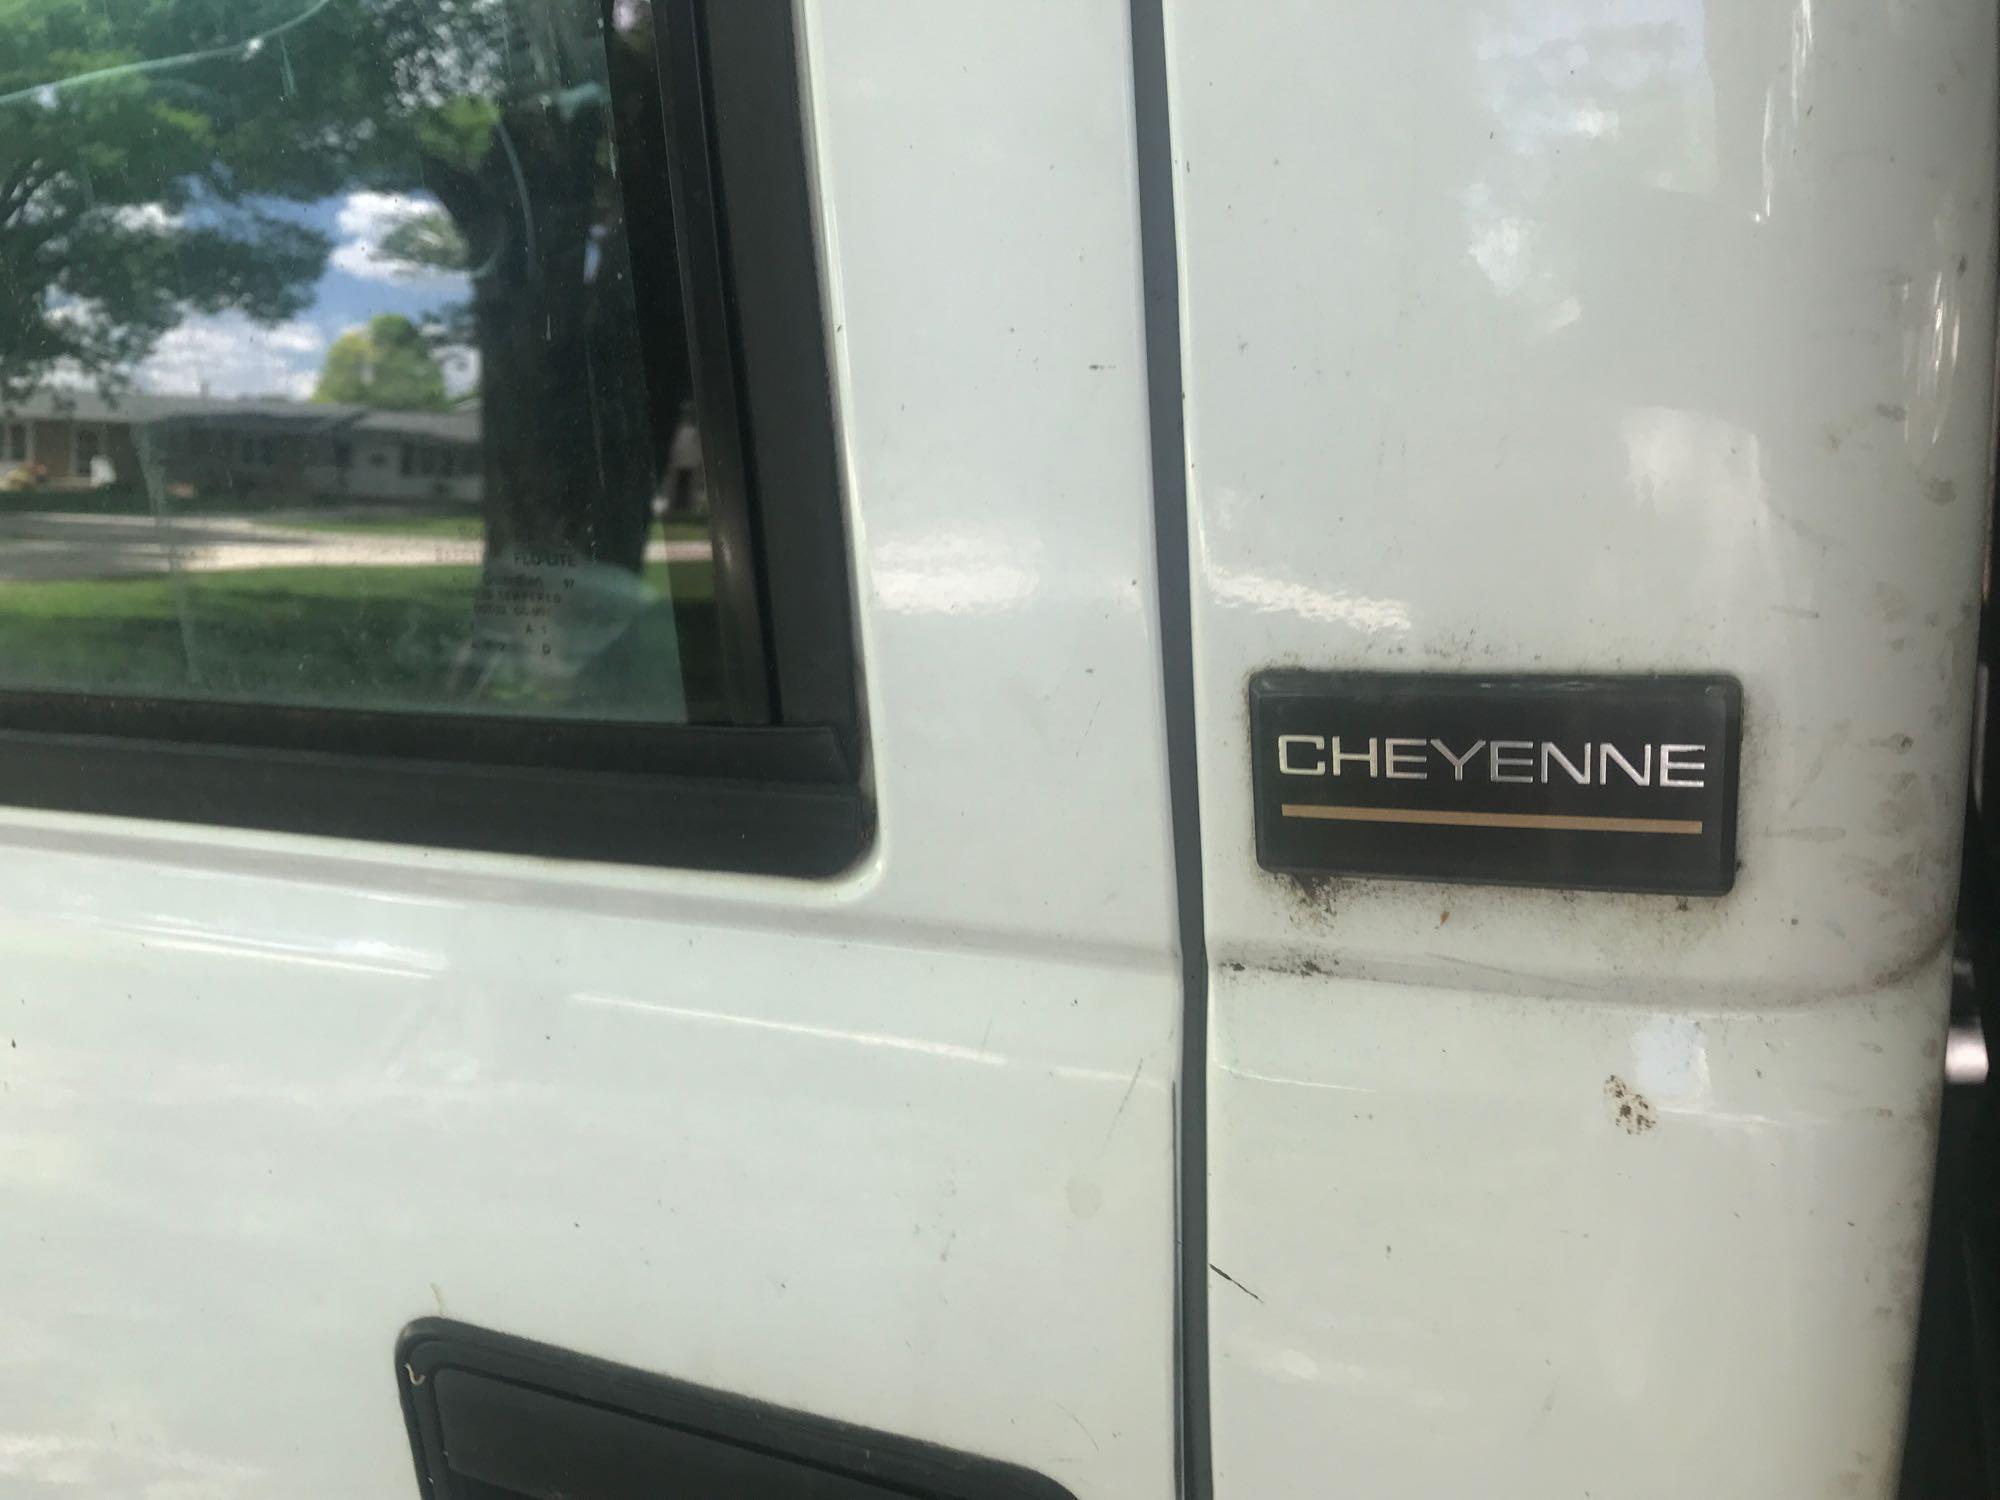 1997 Chevy Cheyenne C350 Truck w/reg. cab, vortec 8 cyl. Engine, a/c, auto, 155,845 miles w/Omaha